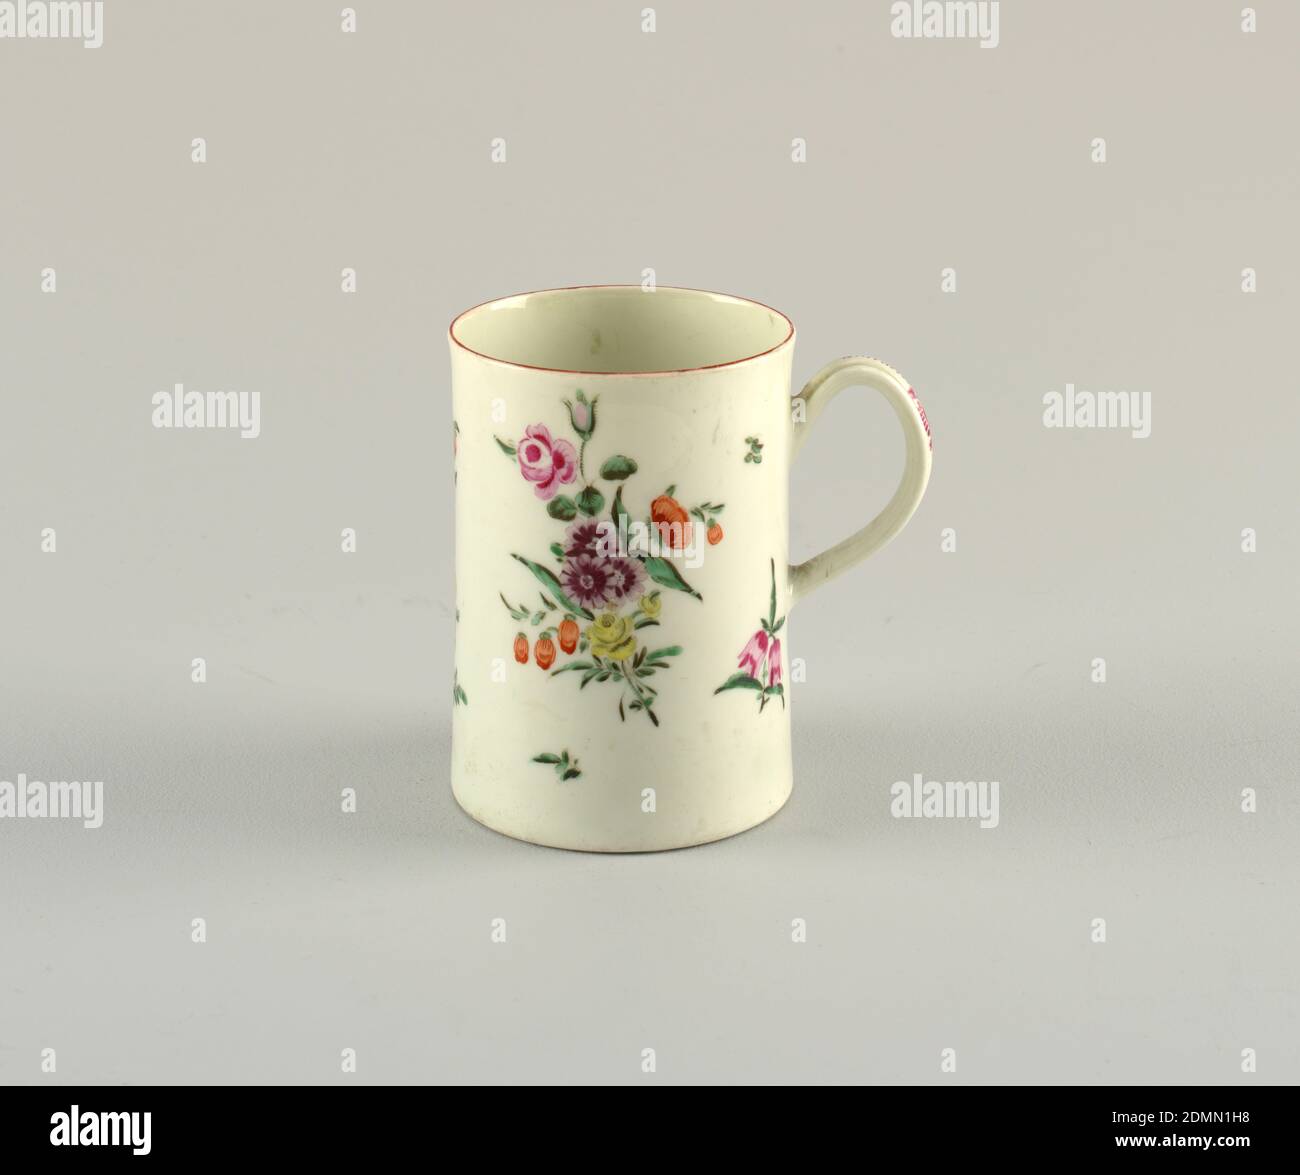 Mug, Royal Worcester, English, established 1751, porcelain, vitreous enamel, Mug decorated with scattered flowers., England, late 18th century, ceramics, Decorative Arts, mug, mug Stock Photo